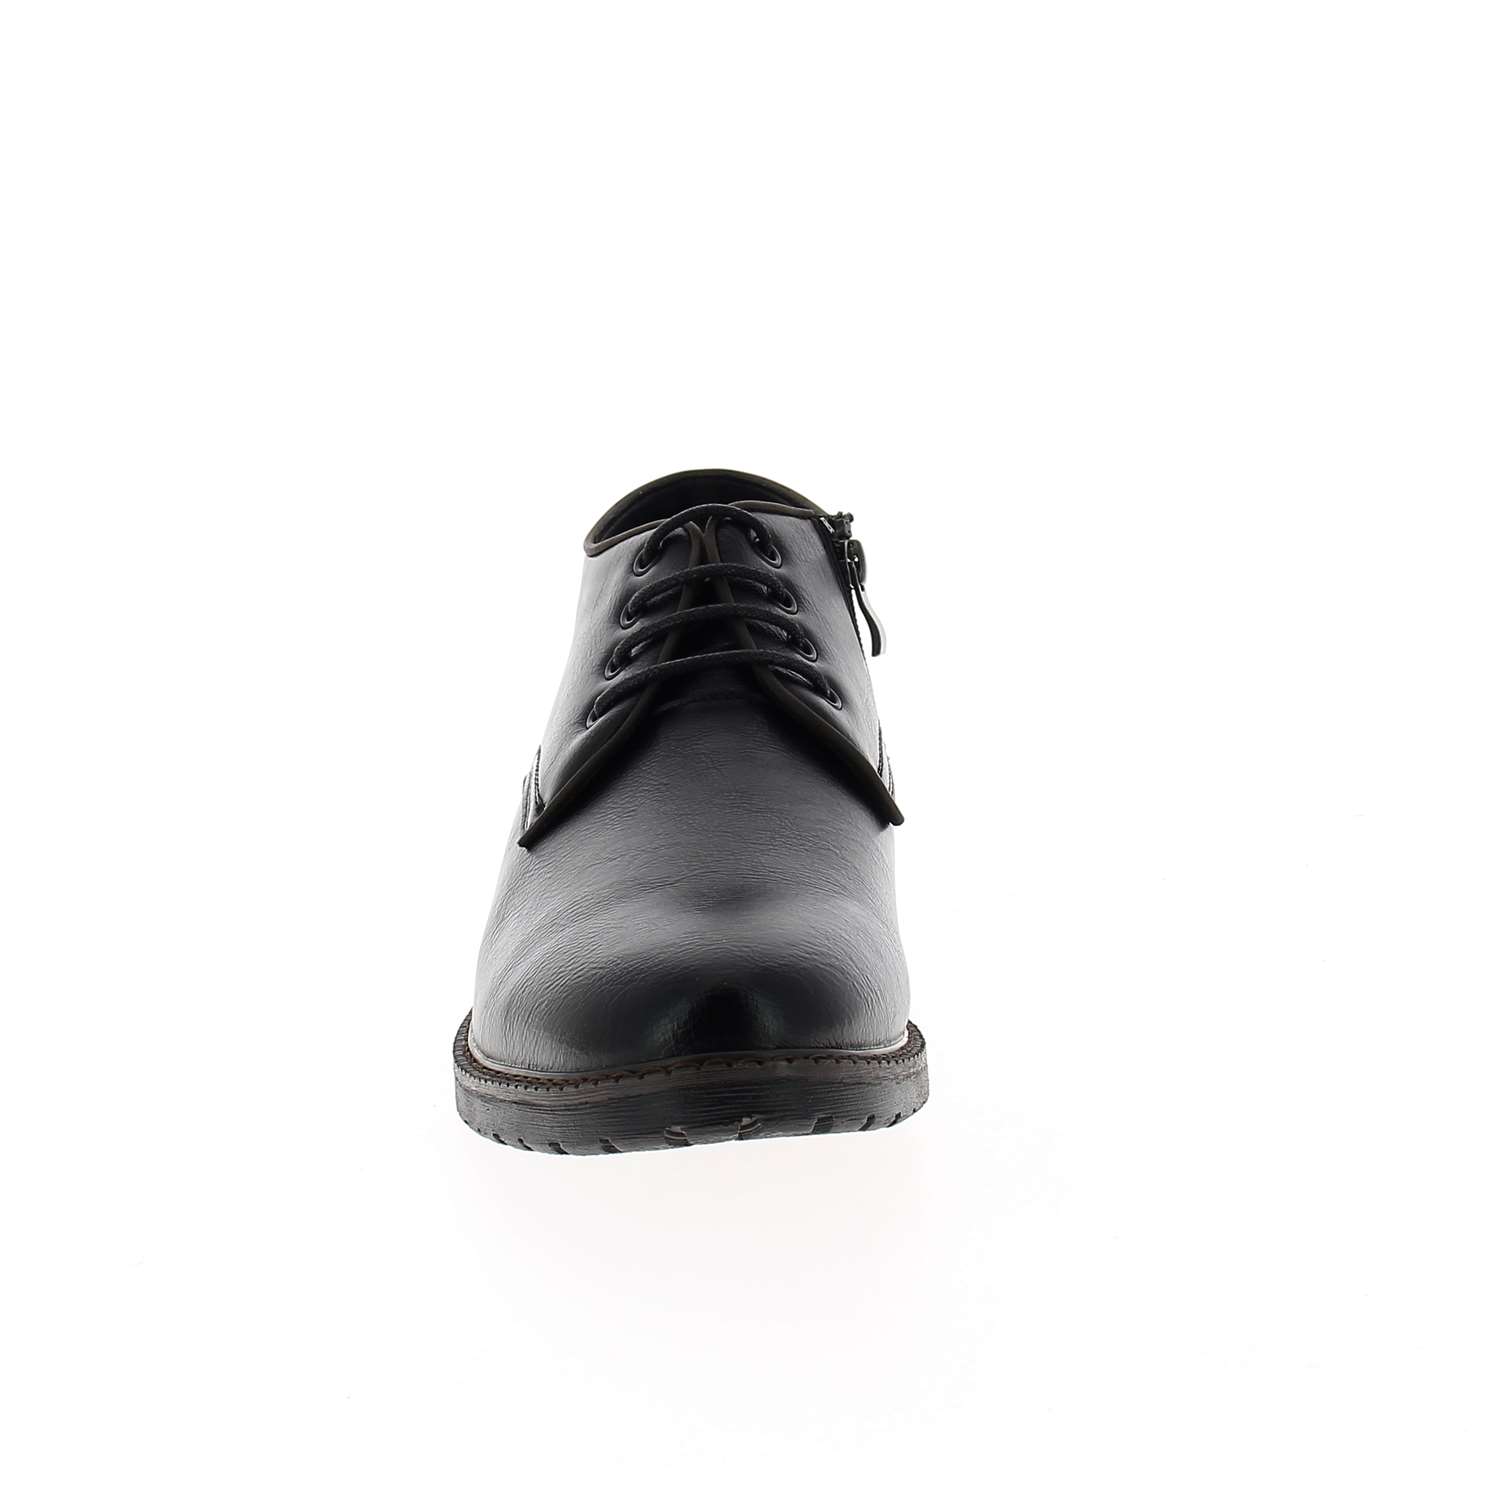 03 - THEOVIE - CLAUDIA GHIZZANI - Chaussures à lacets - Élastomère